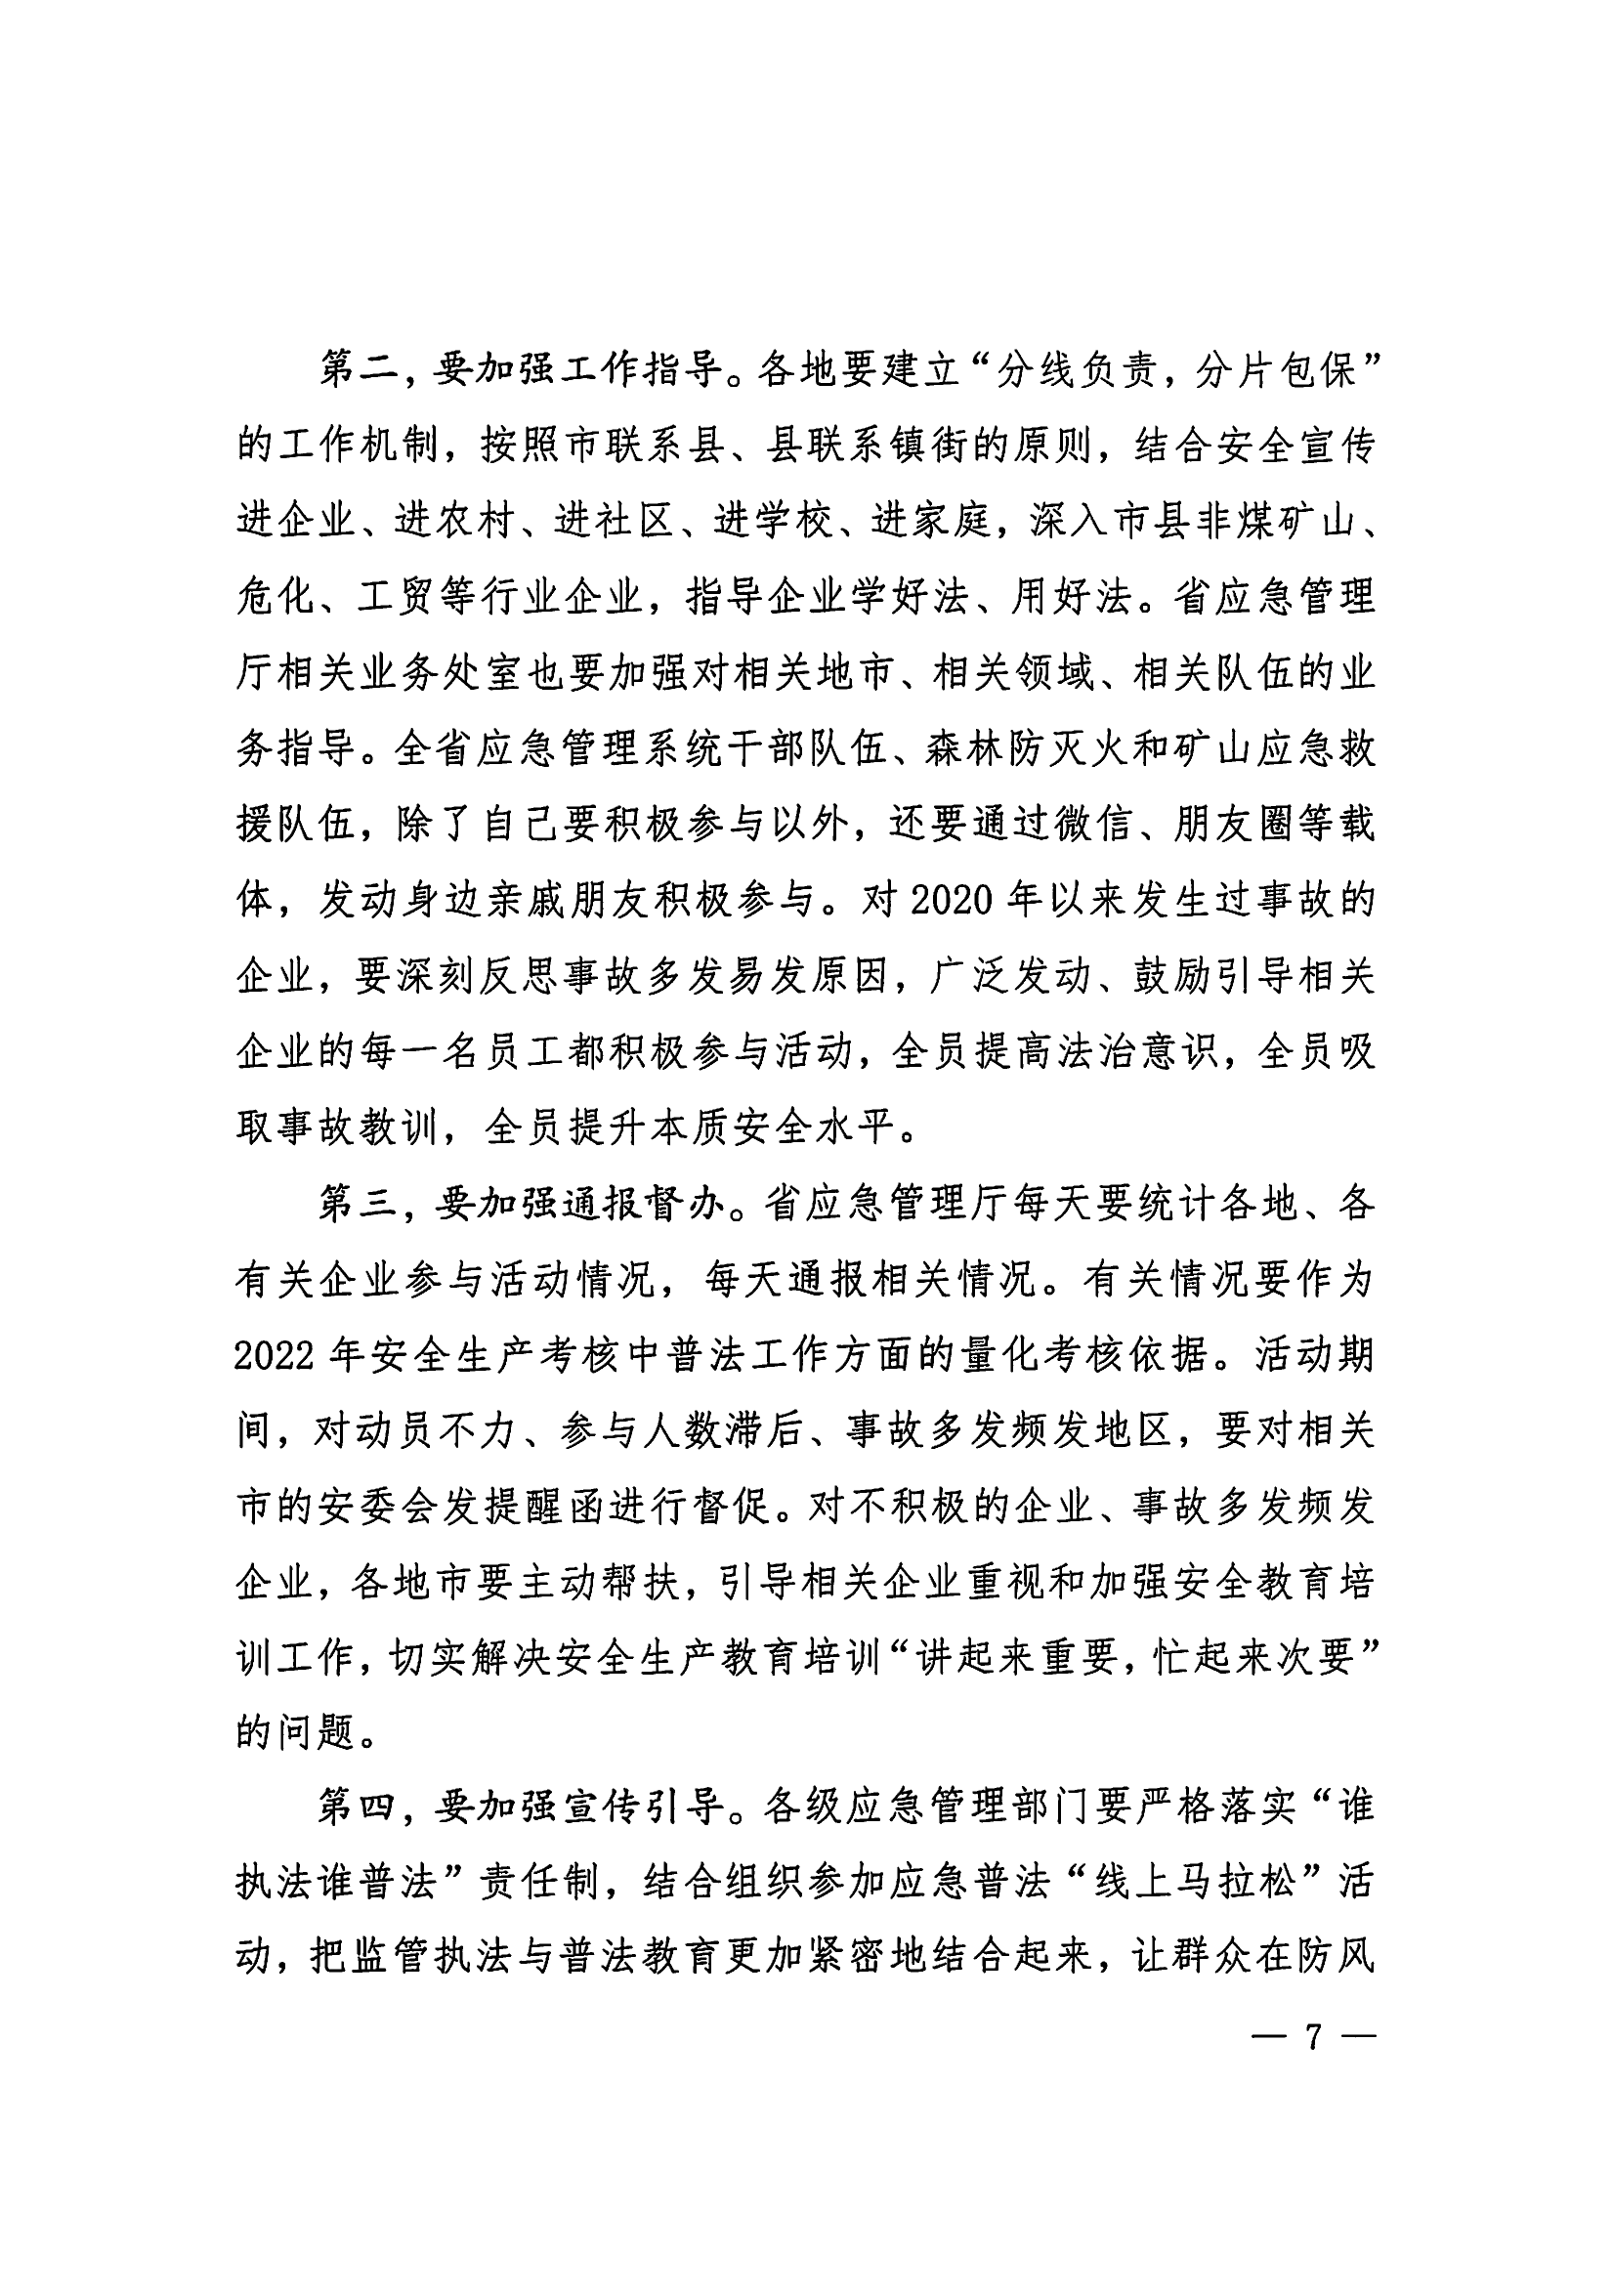 惠州市安全生产委员会办公室转发关于进一步组织开展好广东应急普法“线上马拉松”活动的通知_08.png